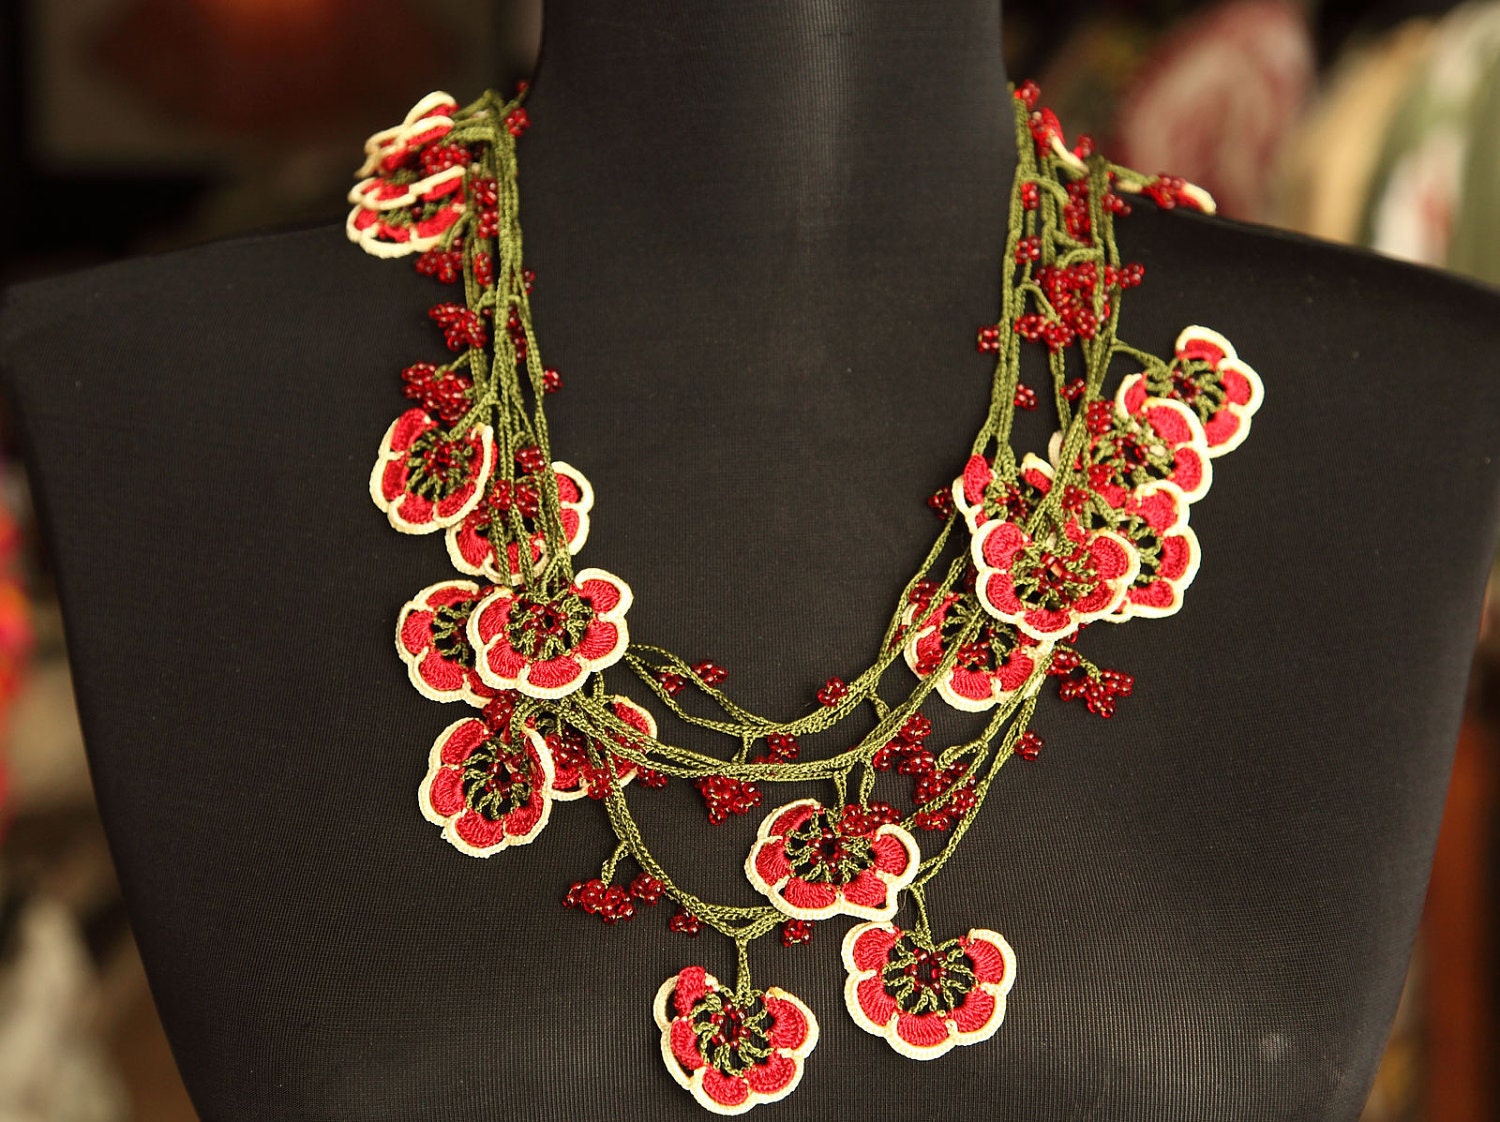 turkish lace - needle lace - oya necklace - FREE SHIPMENT - 008-09